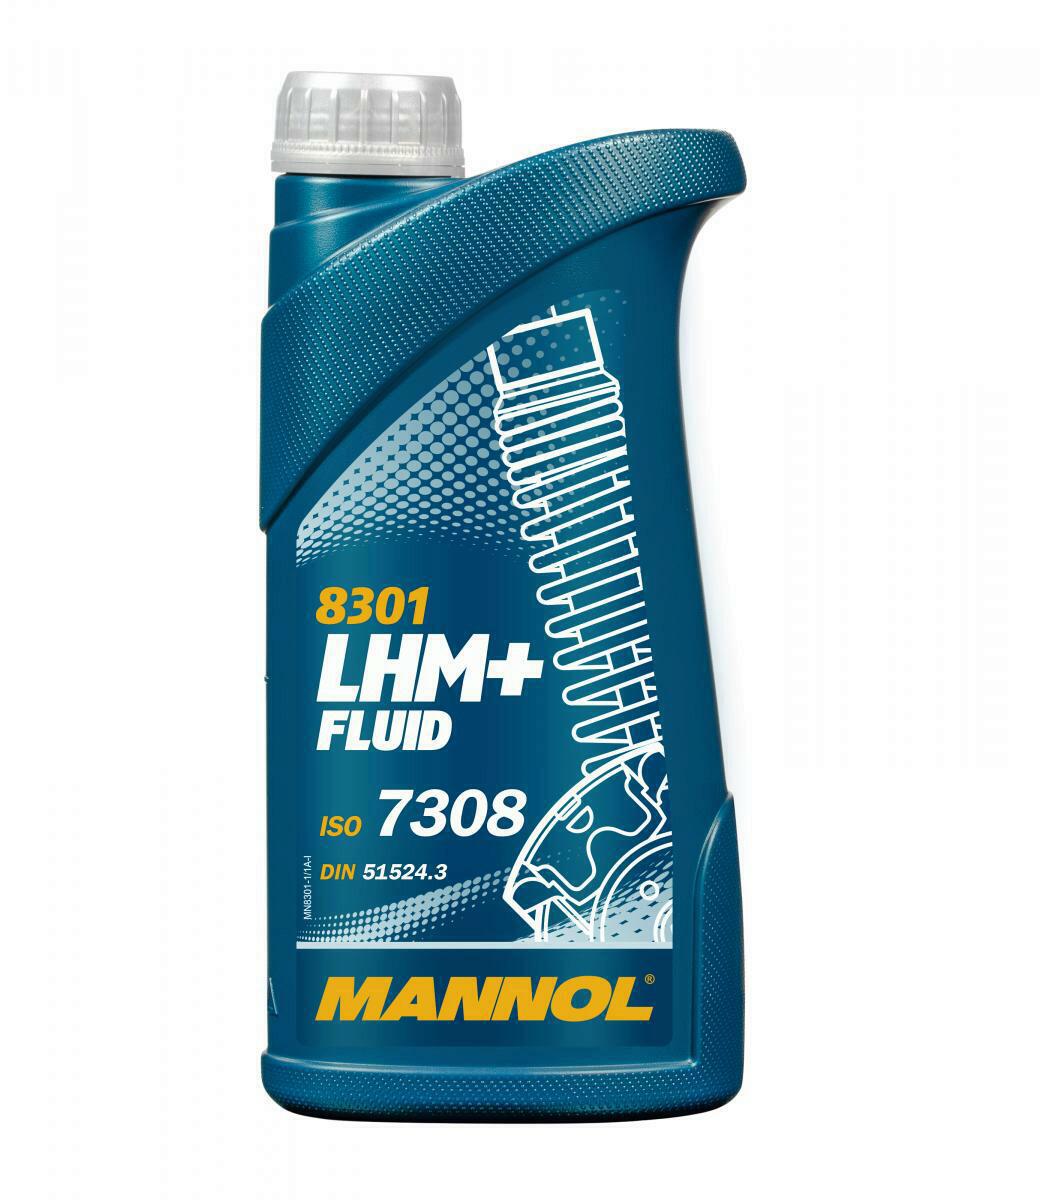 1L Mannol LHM+ Plus Fluid Hydrauliköl